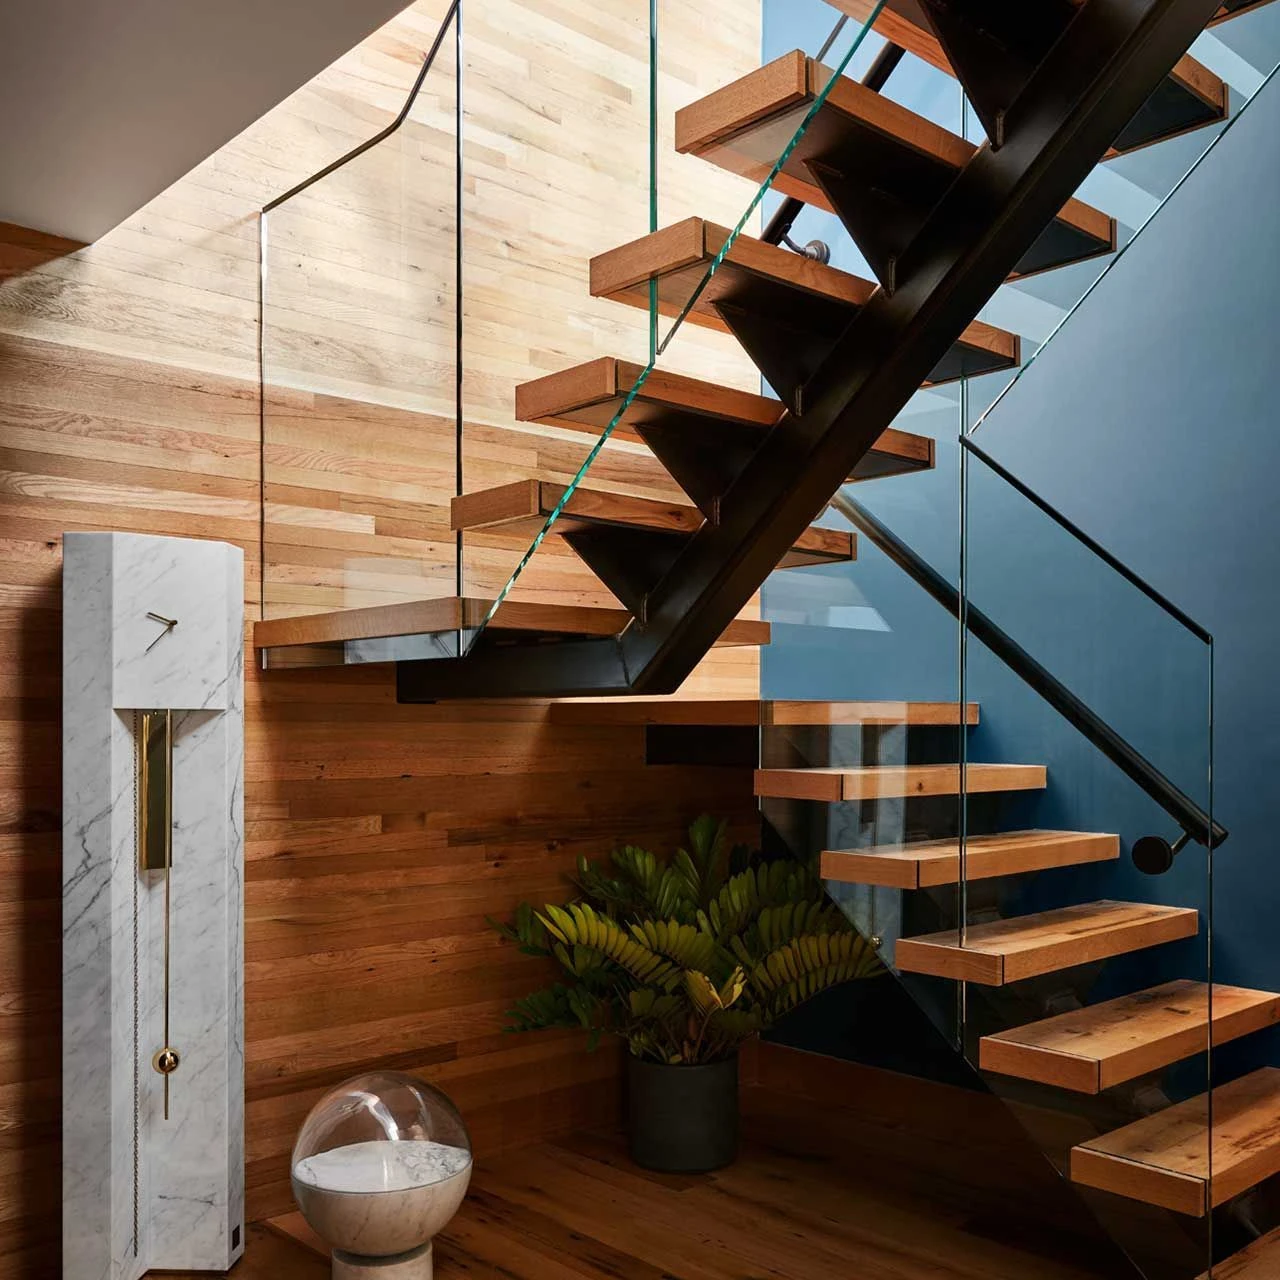 Цена по прейскуранту завода-изготовителя Высокое качество интерьер моно стронгер прямые светодиодные светильники 80 мм толщиной деревянные ступенчатые лестницы с индивидуальными лестничными перилами